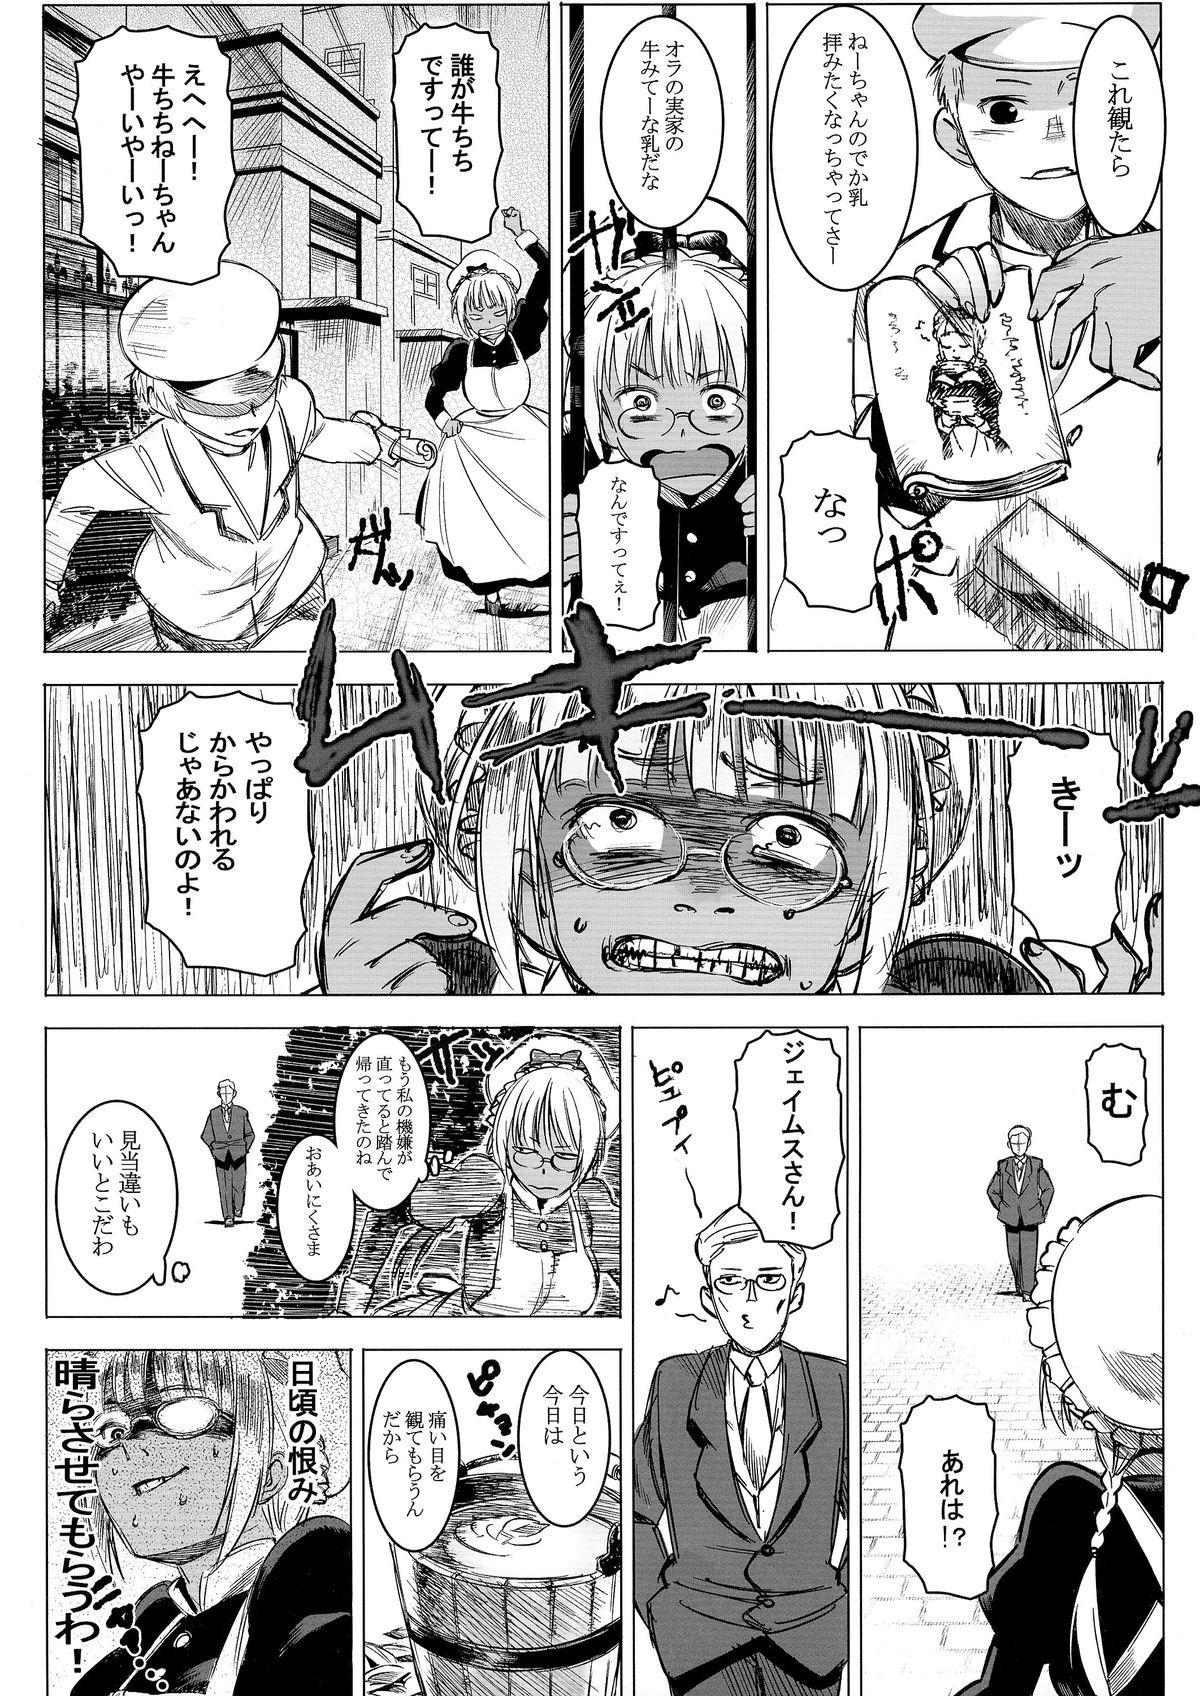 Old Man Kasshoku Kokumaro Funnyuu Maid! Baka ka!!! Gayporn - Page 5